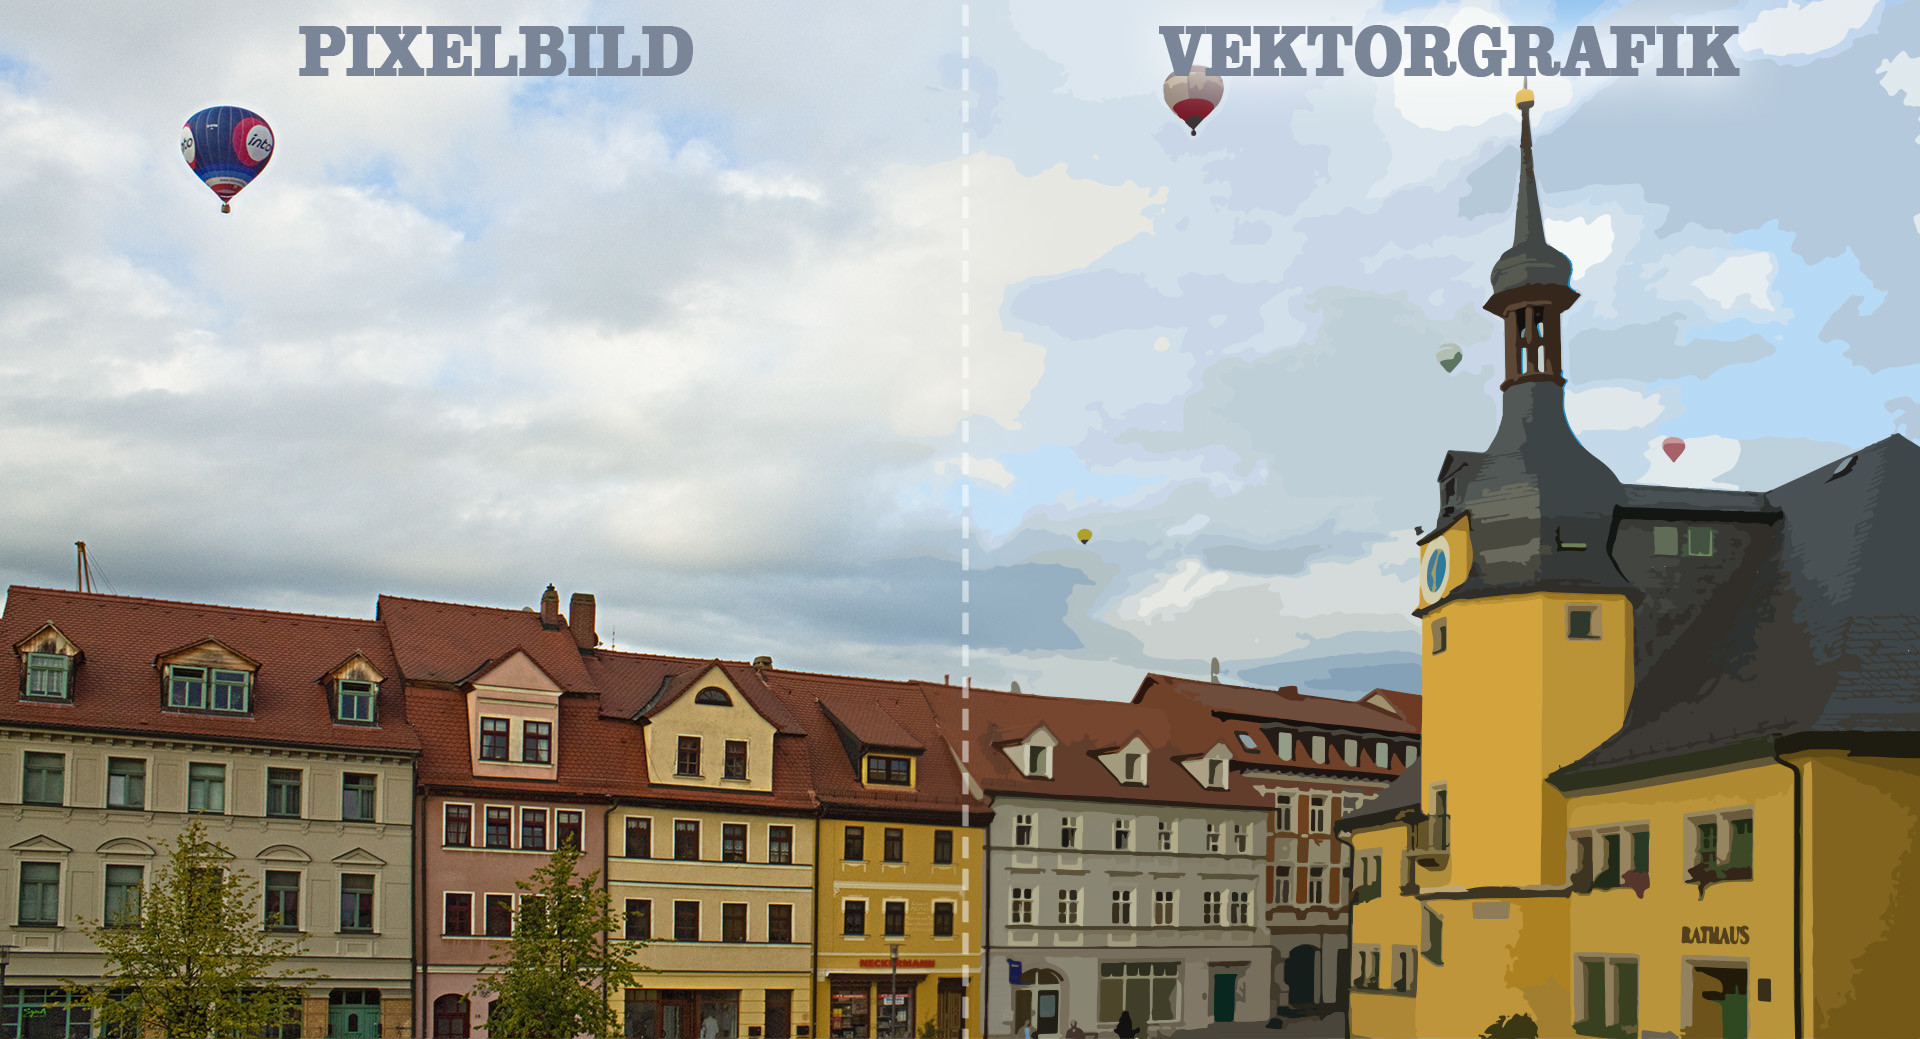 Pixel vs. Vektor - Pixelbild und Vektorgrafik - Vergleich zwischen Pixelbild und Vektorgrafik